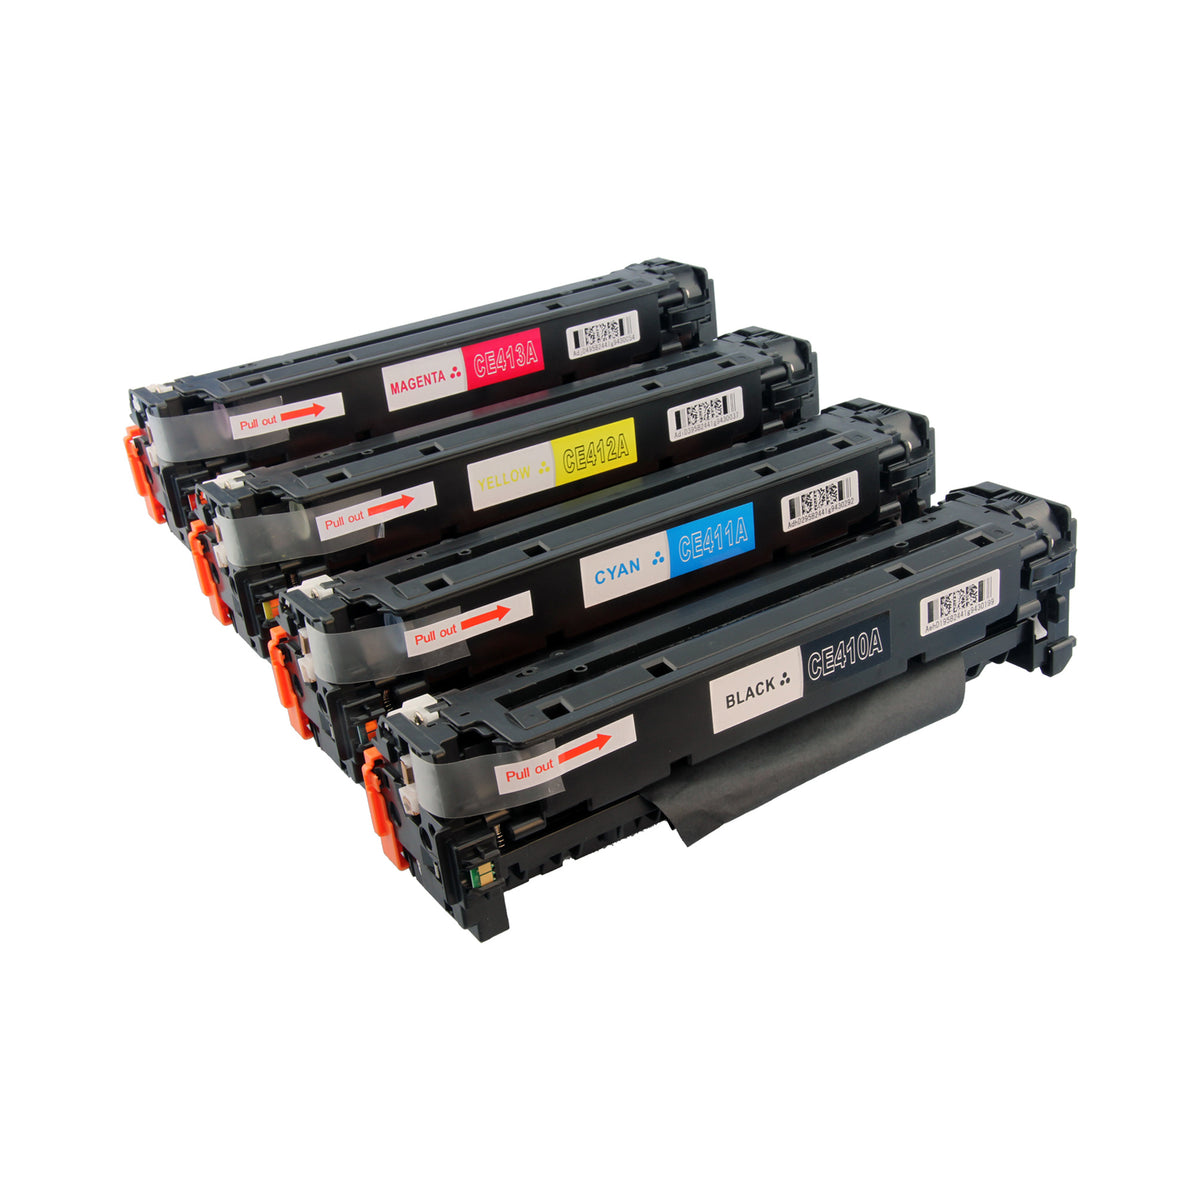 4x Compatible HP CE410A, CE411A, CE412A, CE413A Toner Cartridges (BK+C+M+Y)